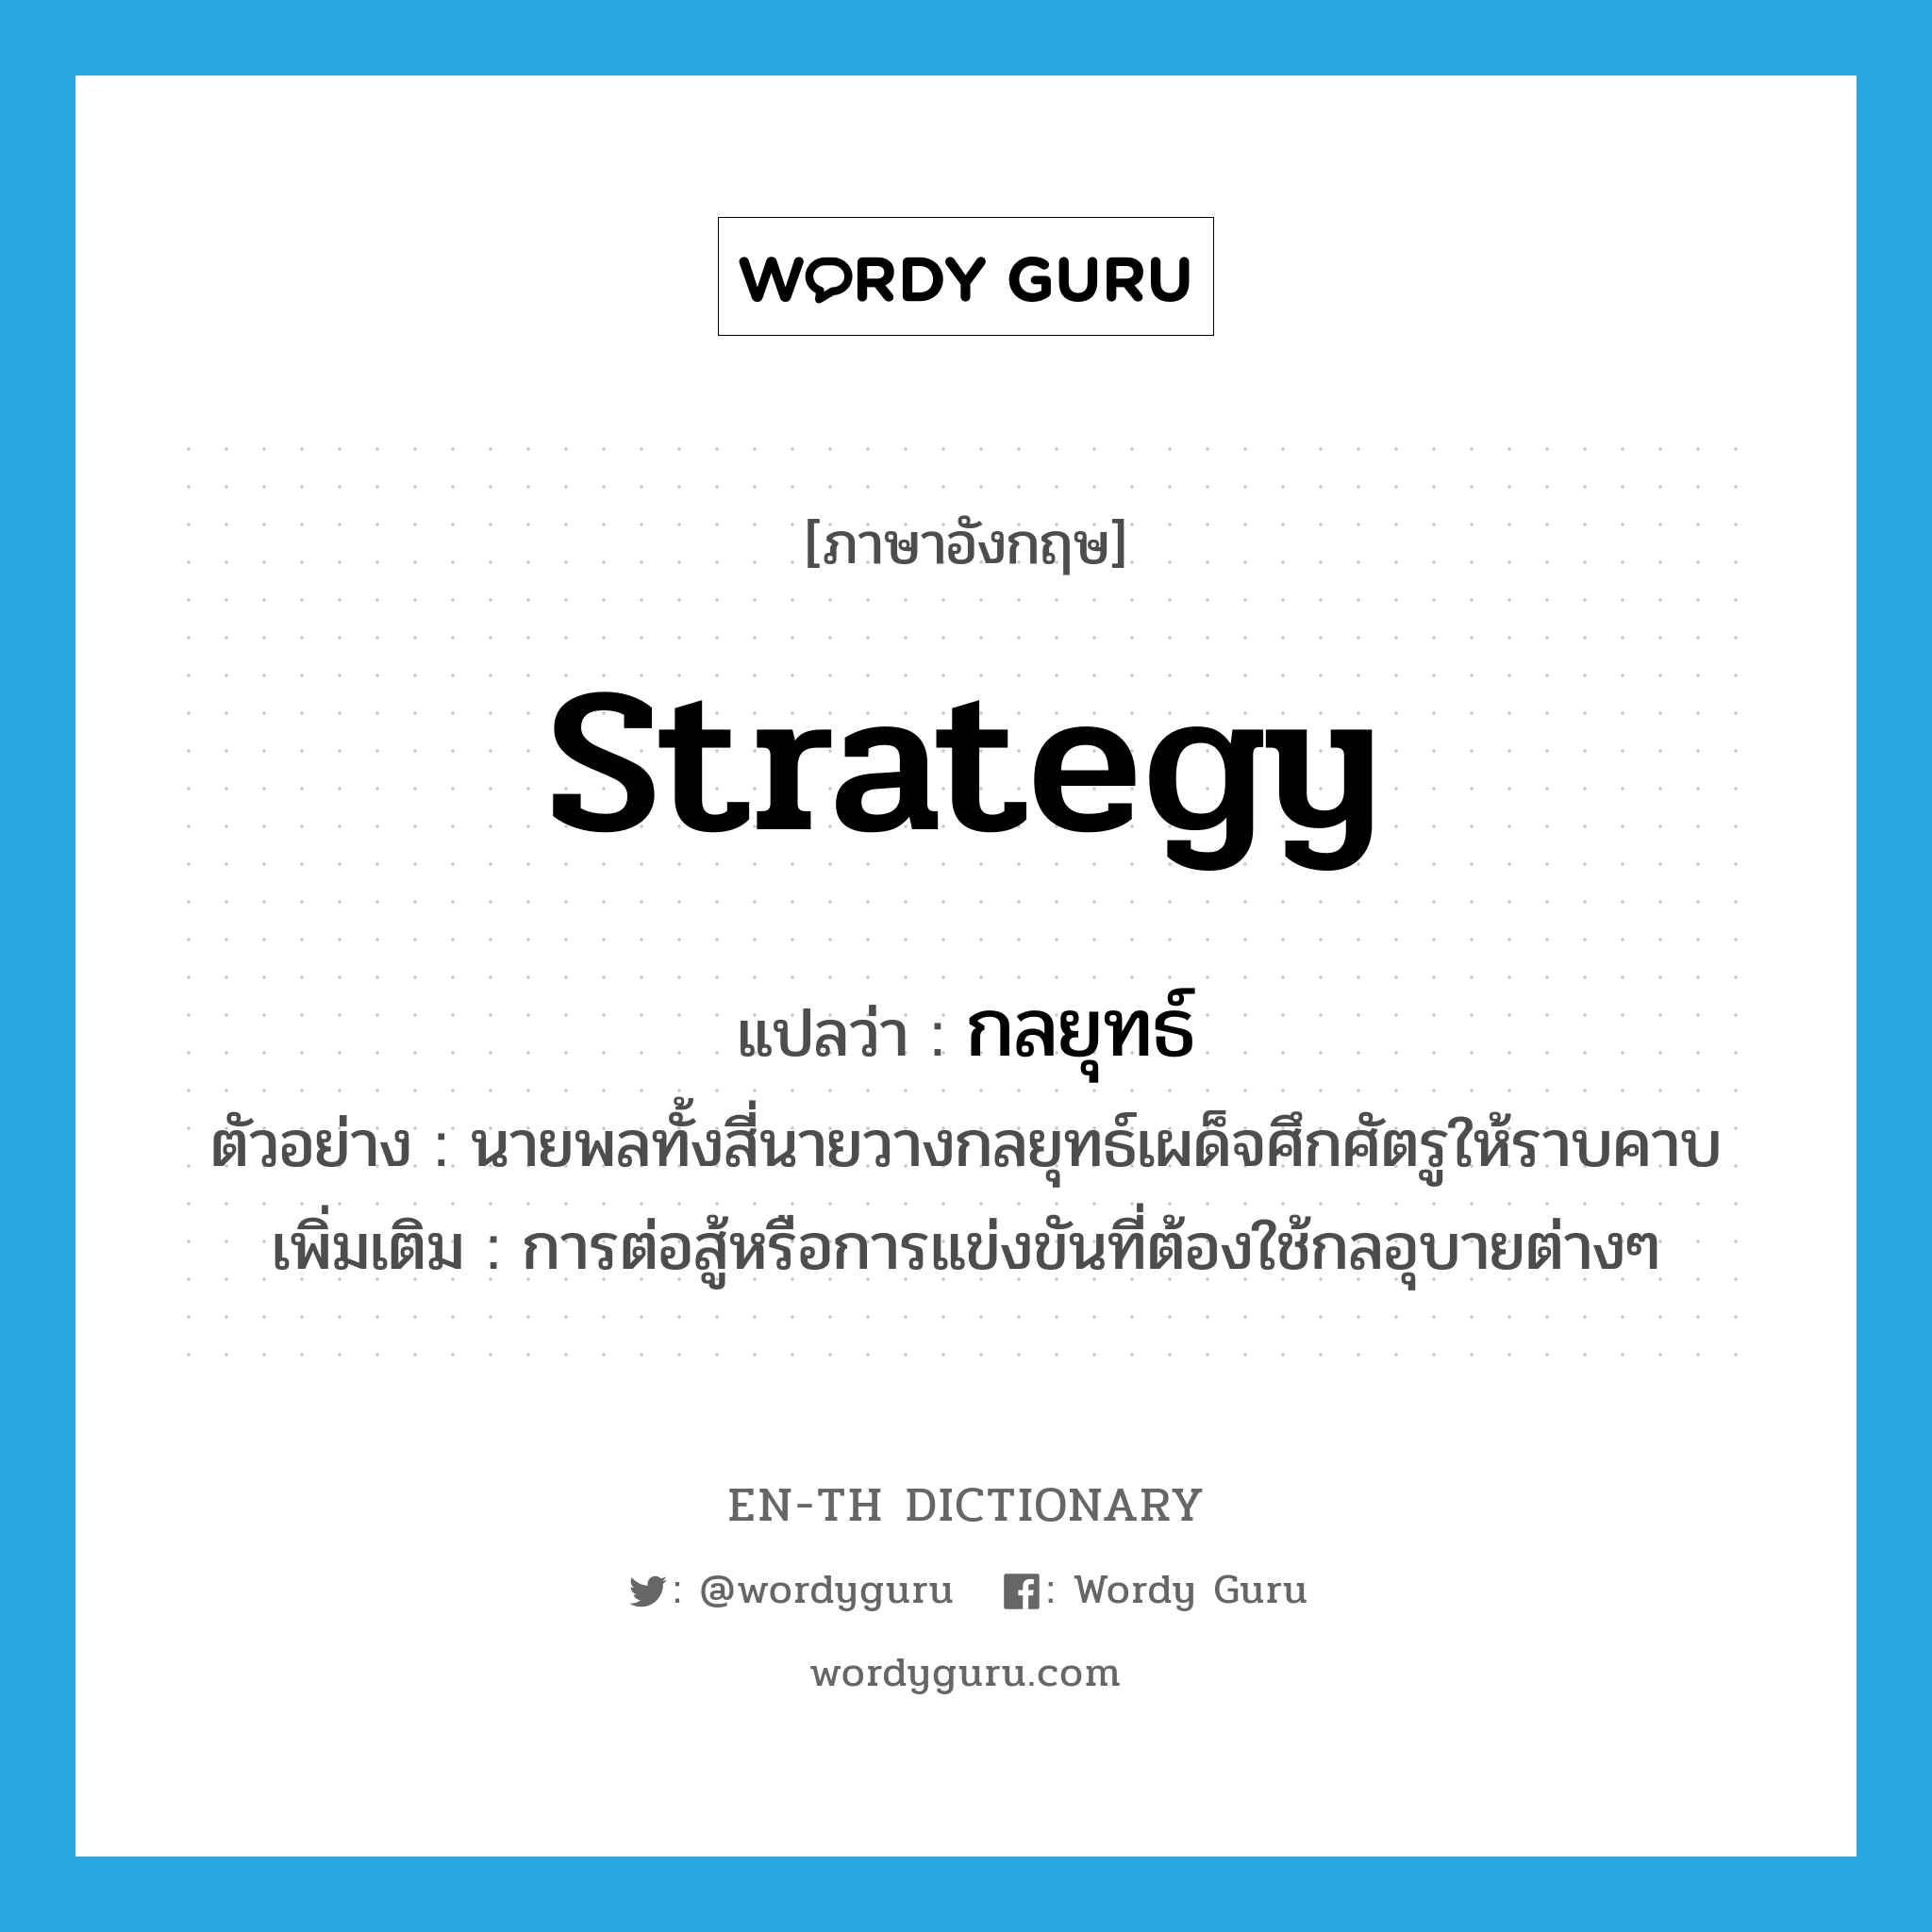 strategy แปลว่า?, คำศัพท์ภาษาอังกฤษ strategy แปลว่า กลยุทธ์ ประเภท N ตัวอย่าง นายพลทั้งสี่นายวางกลยุทธ์เผด็จศึกศัตรูให้ราบคาบ เพิ่มเติม การต่อสู้หรือการแข่งขันที่ต้องใช้กลอุบายต่างๆ หมวด N